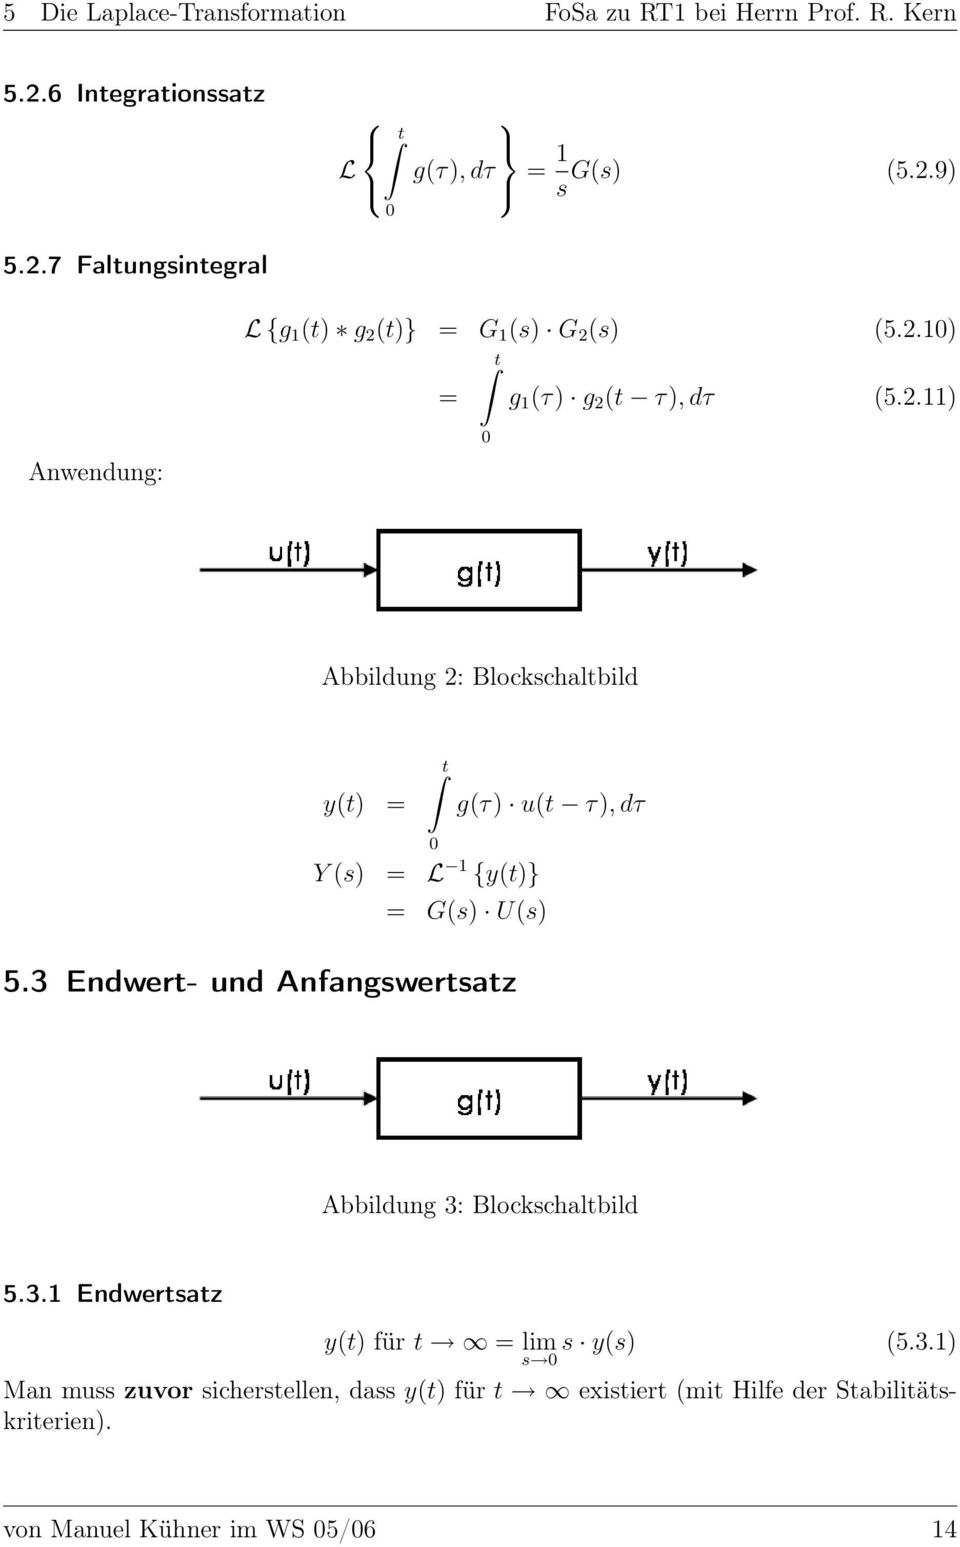 3 Endwert- und Anfangswertsatz Abbildung 3: Blockschaltbild 5.3.1 Endwertsatz y(t) für t = lim s 0 s y(s) (5.3.1) Man muss zuvor sicherstellen, dass y(t) für t existiert (mit Hilfe der Stabilitätskriterien).